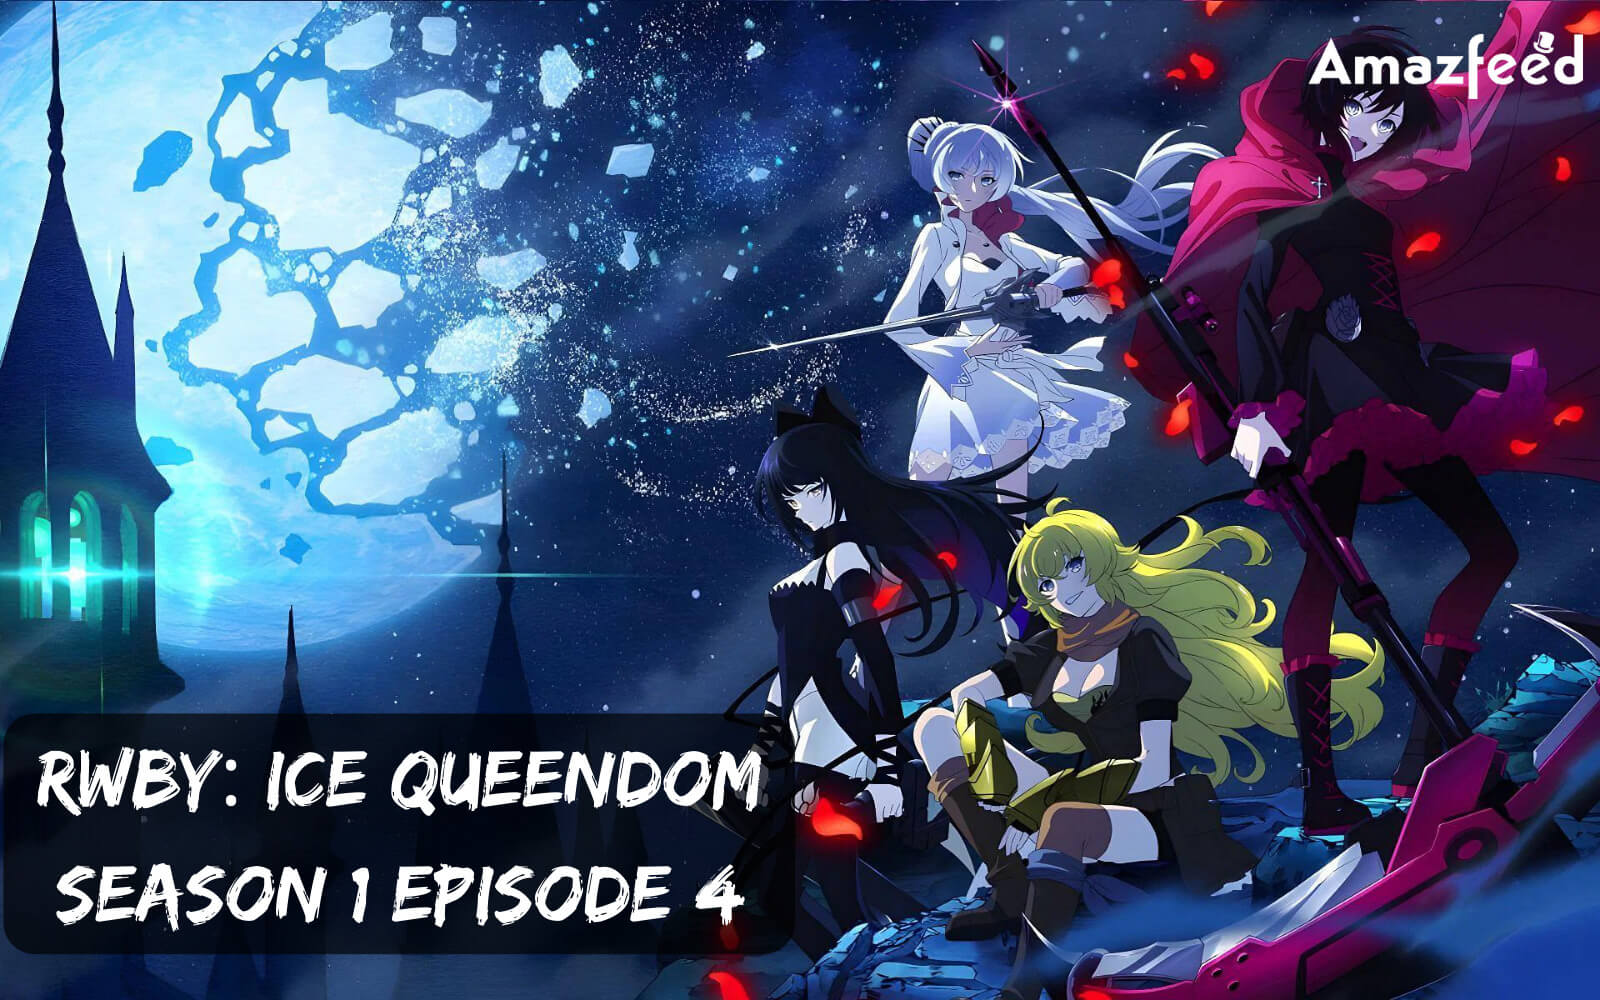 RWBY Ice Queendom Season 1 Episode 4 release date